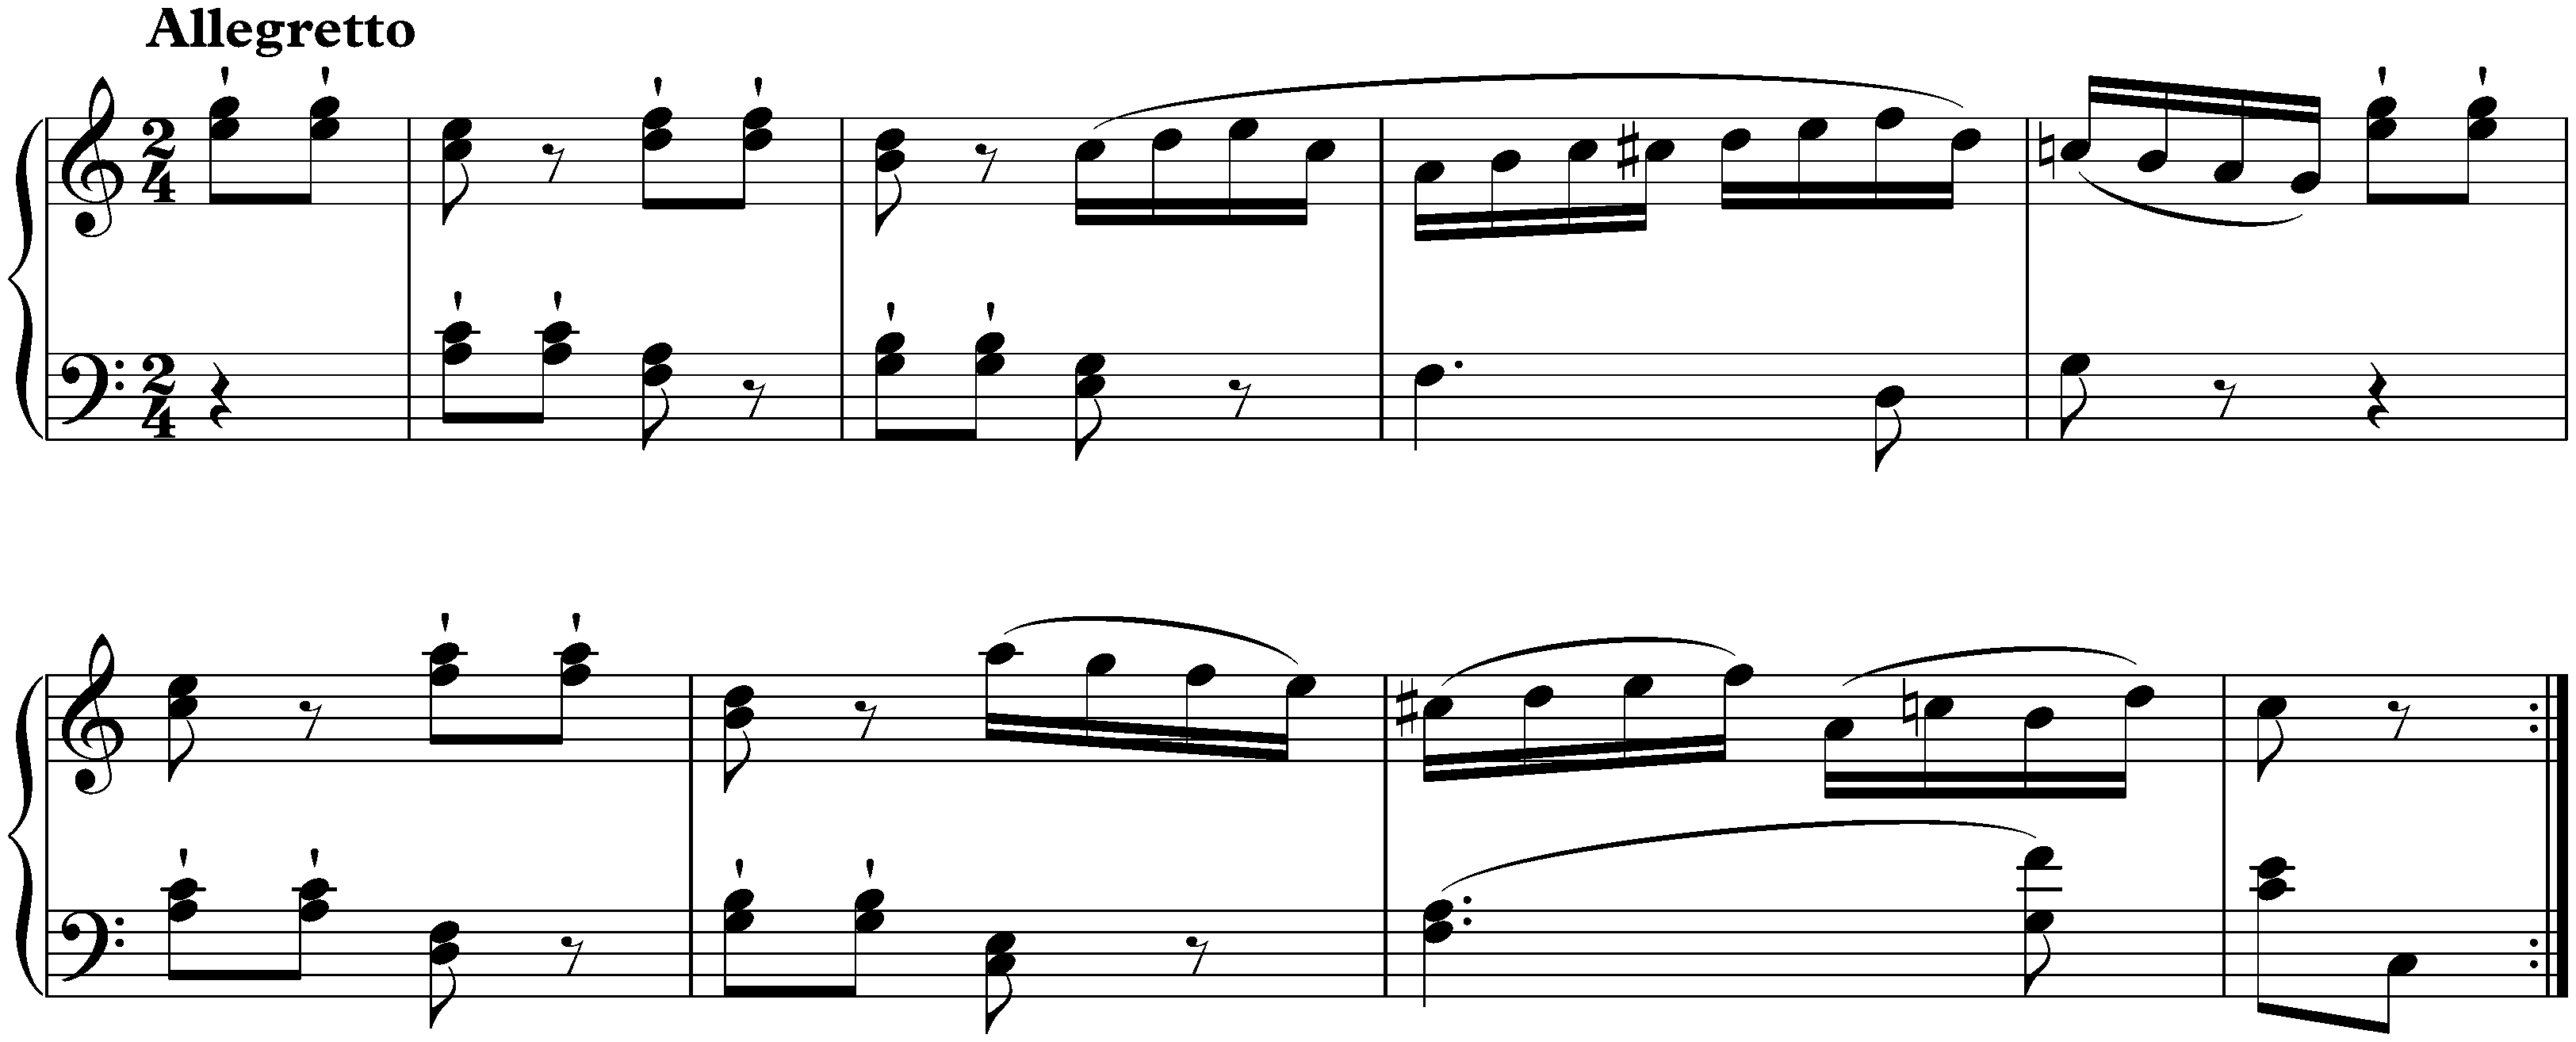 Sonata in C major, KV 545; 3. Rondo: Allegretto